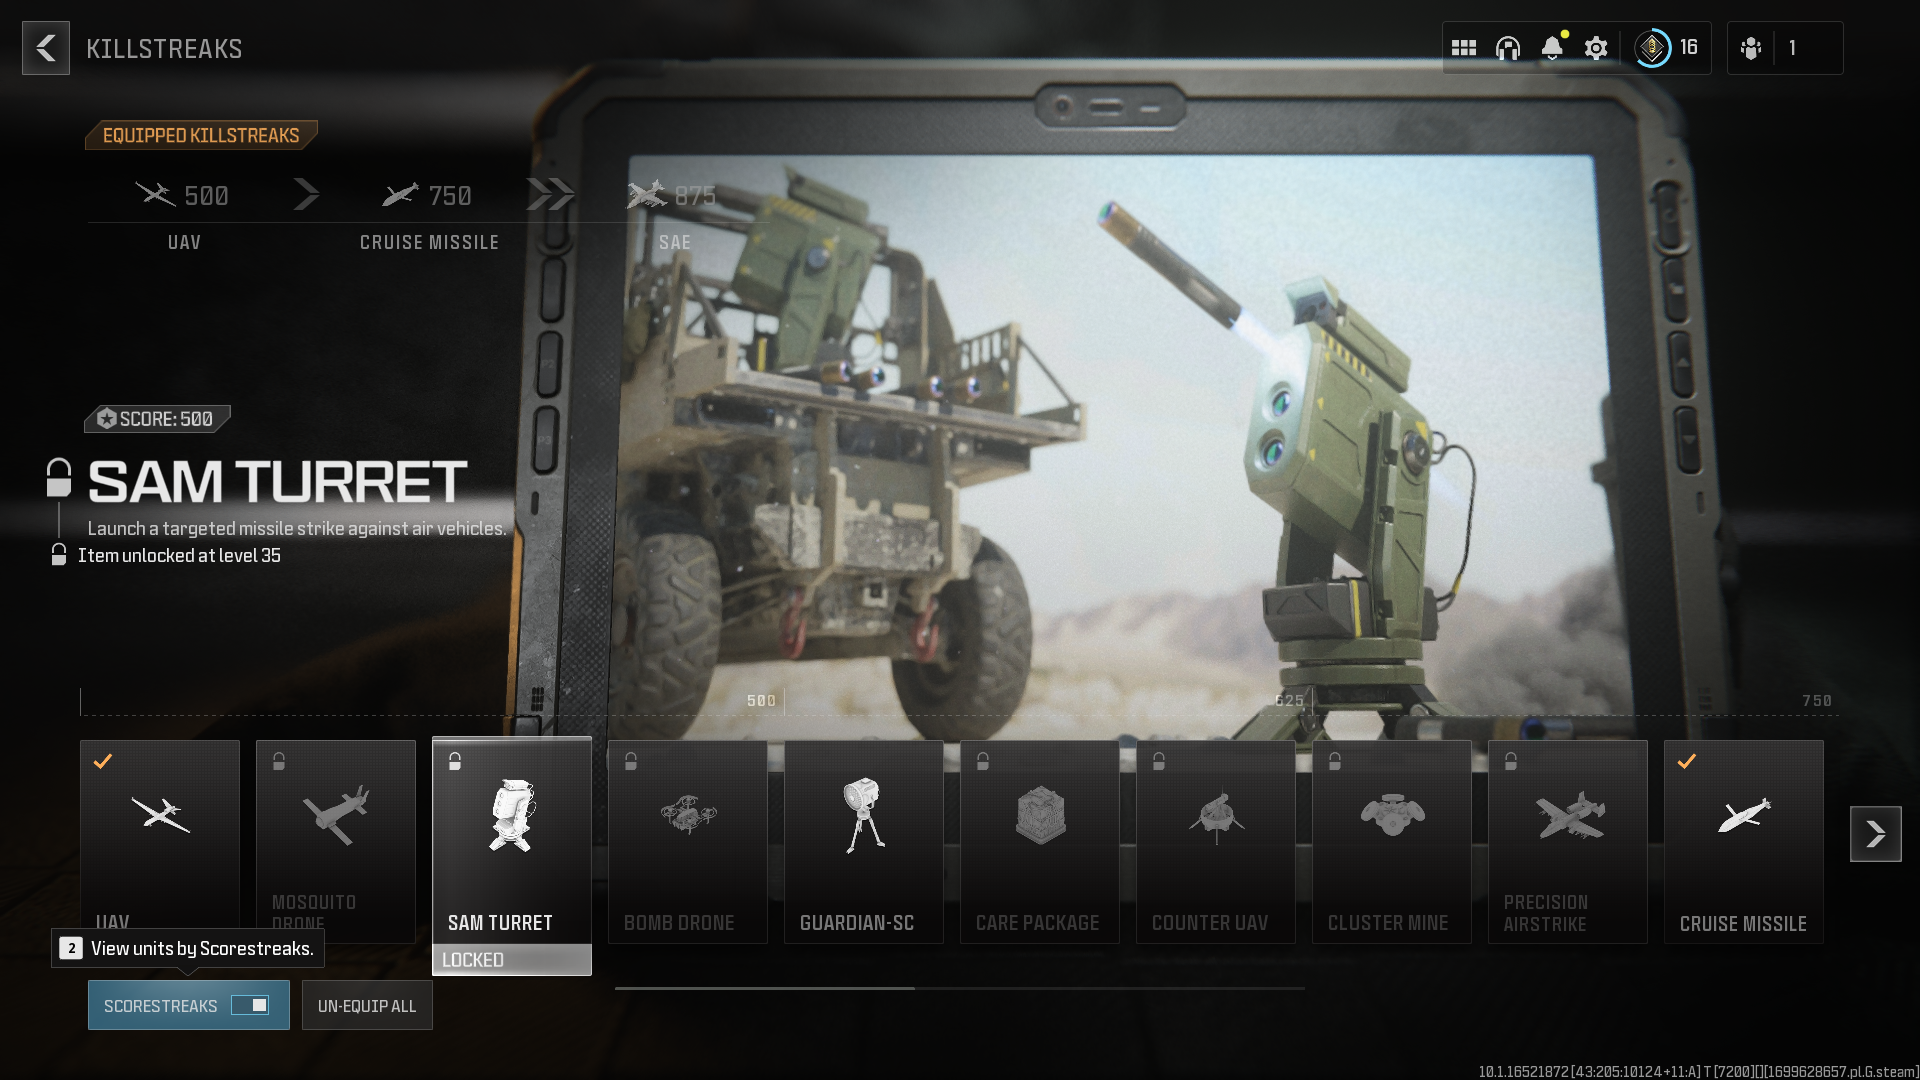 Image of the scorestreak menu in Modern Warfare 3.